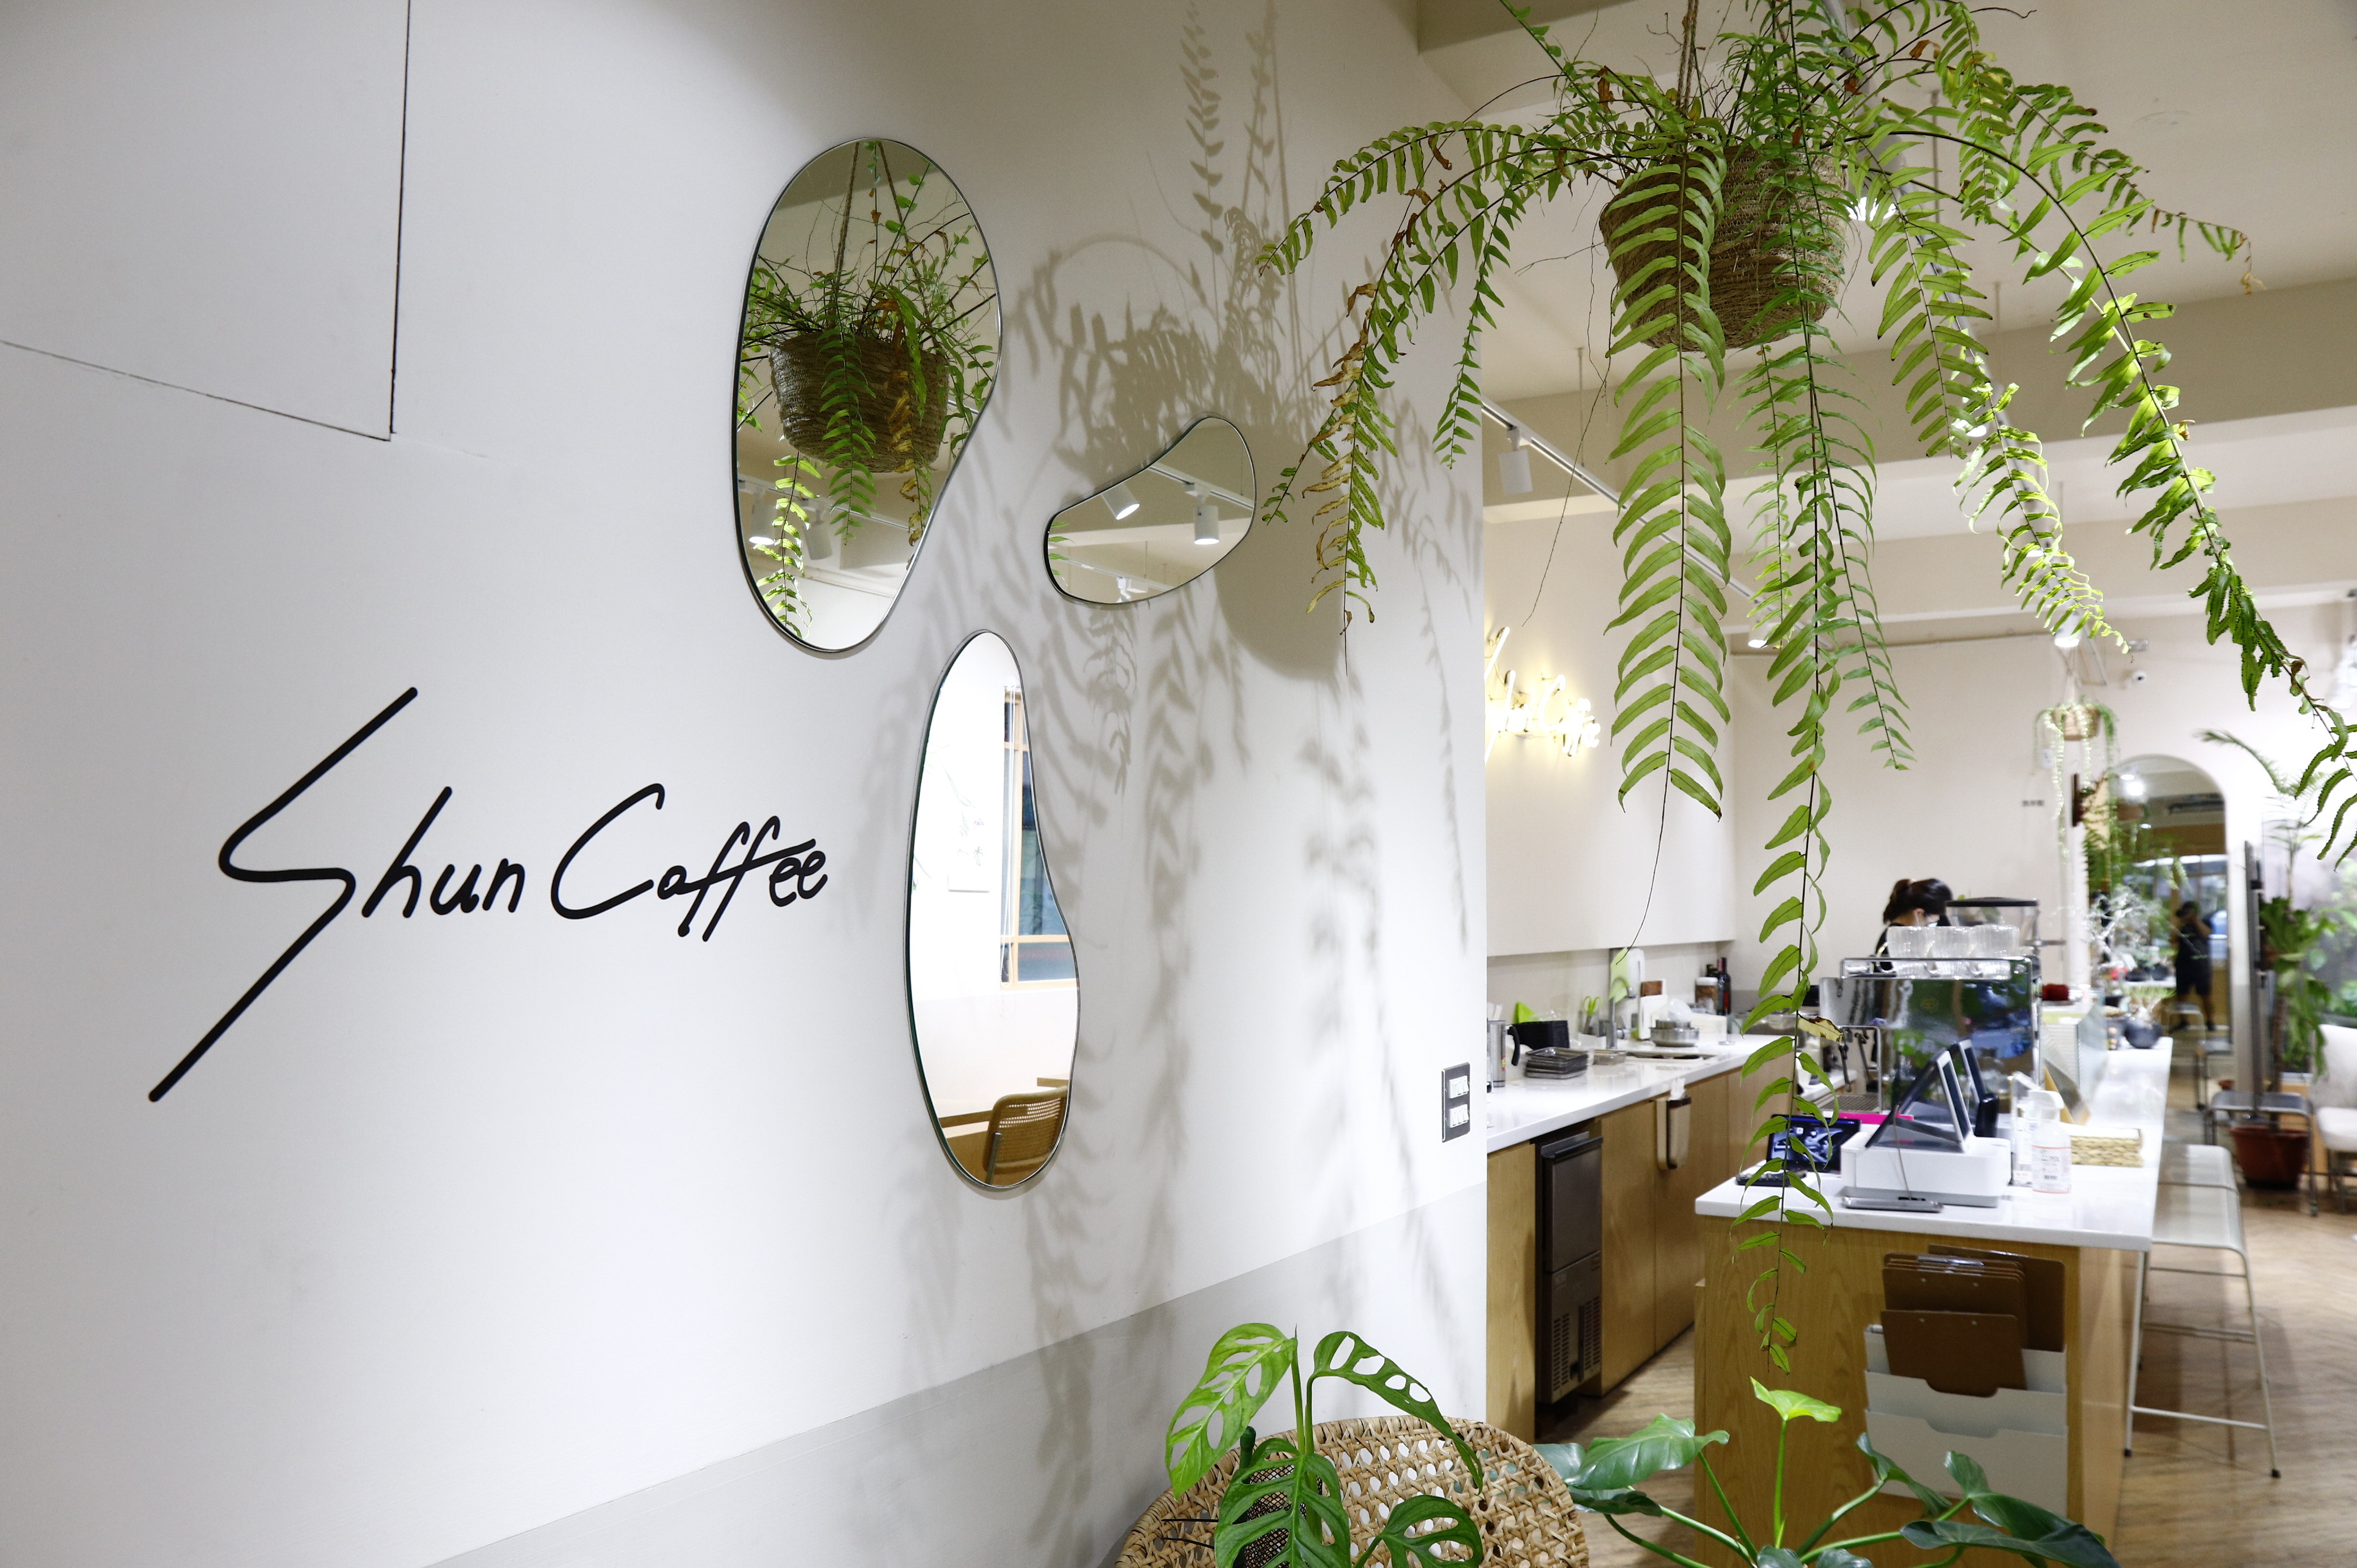 走進Shun Coffee店裡就像走入叢林一樣，被各種不同植物包圍，每隔個座位區精心擺設不同植栽，處處都有驚喜與新鮮感